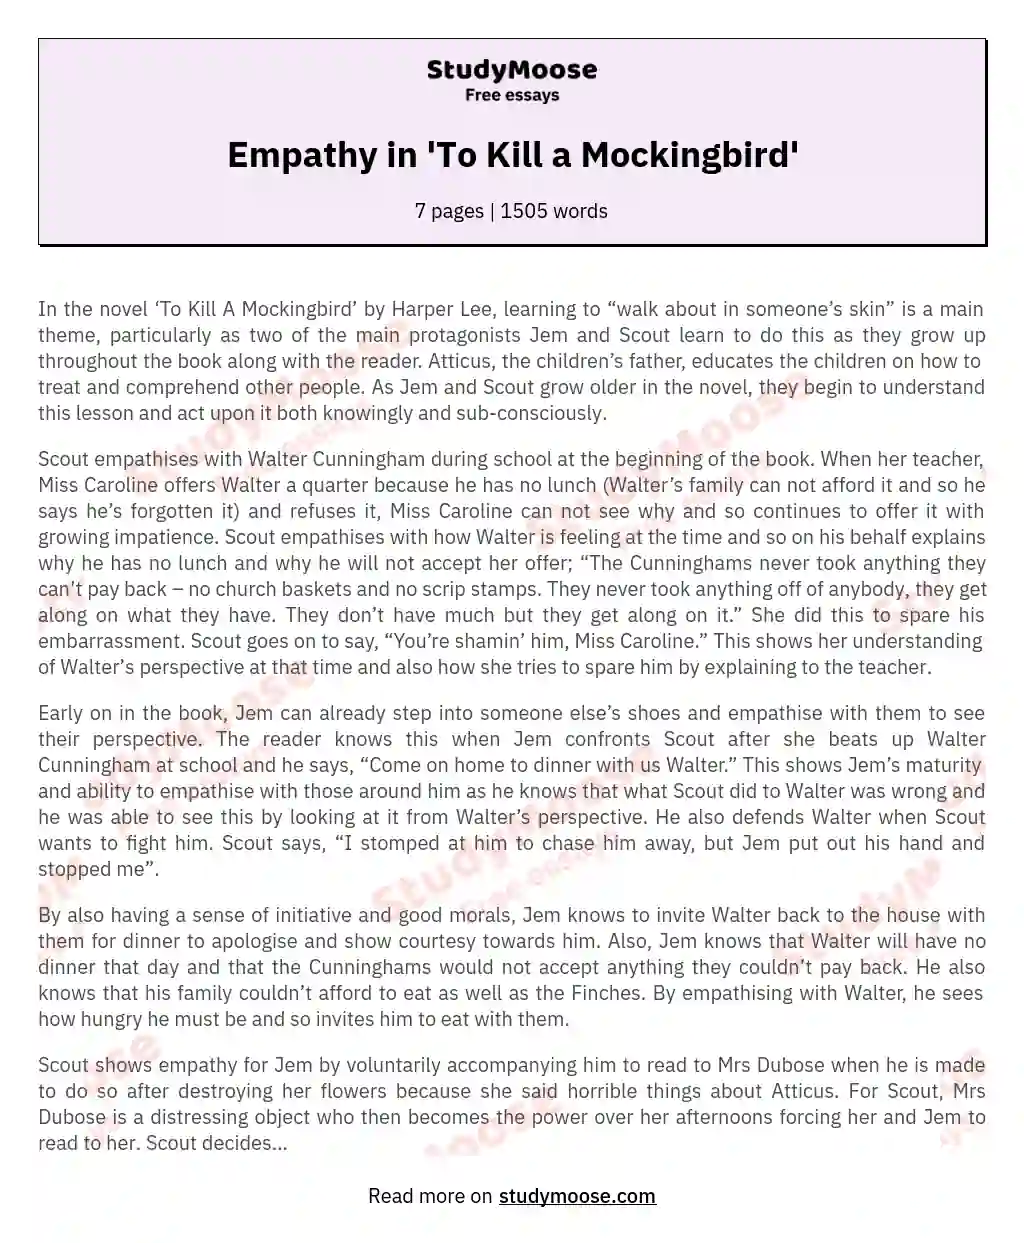 Empathy in 'To Kill a Mockingbird' essay